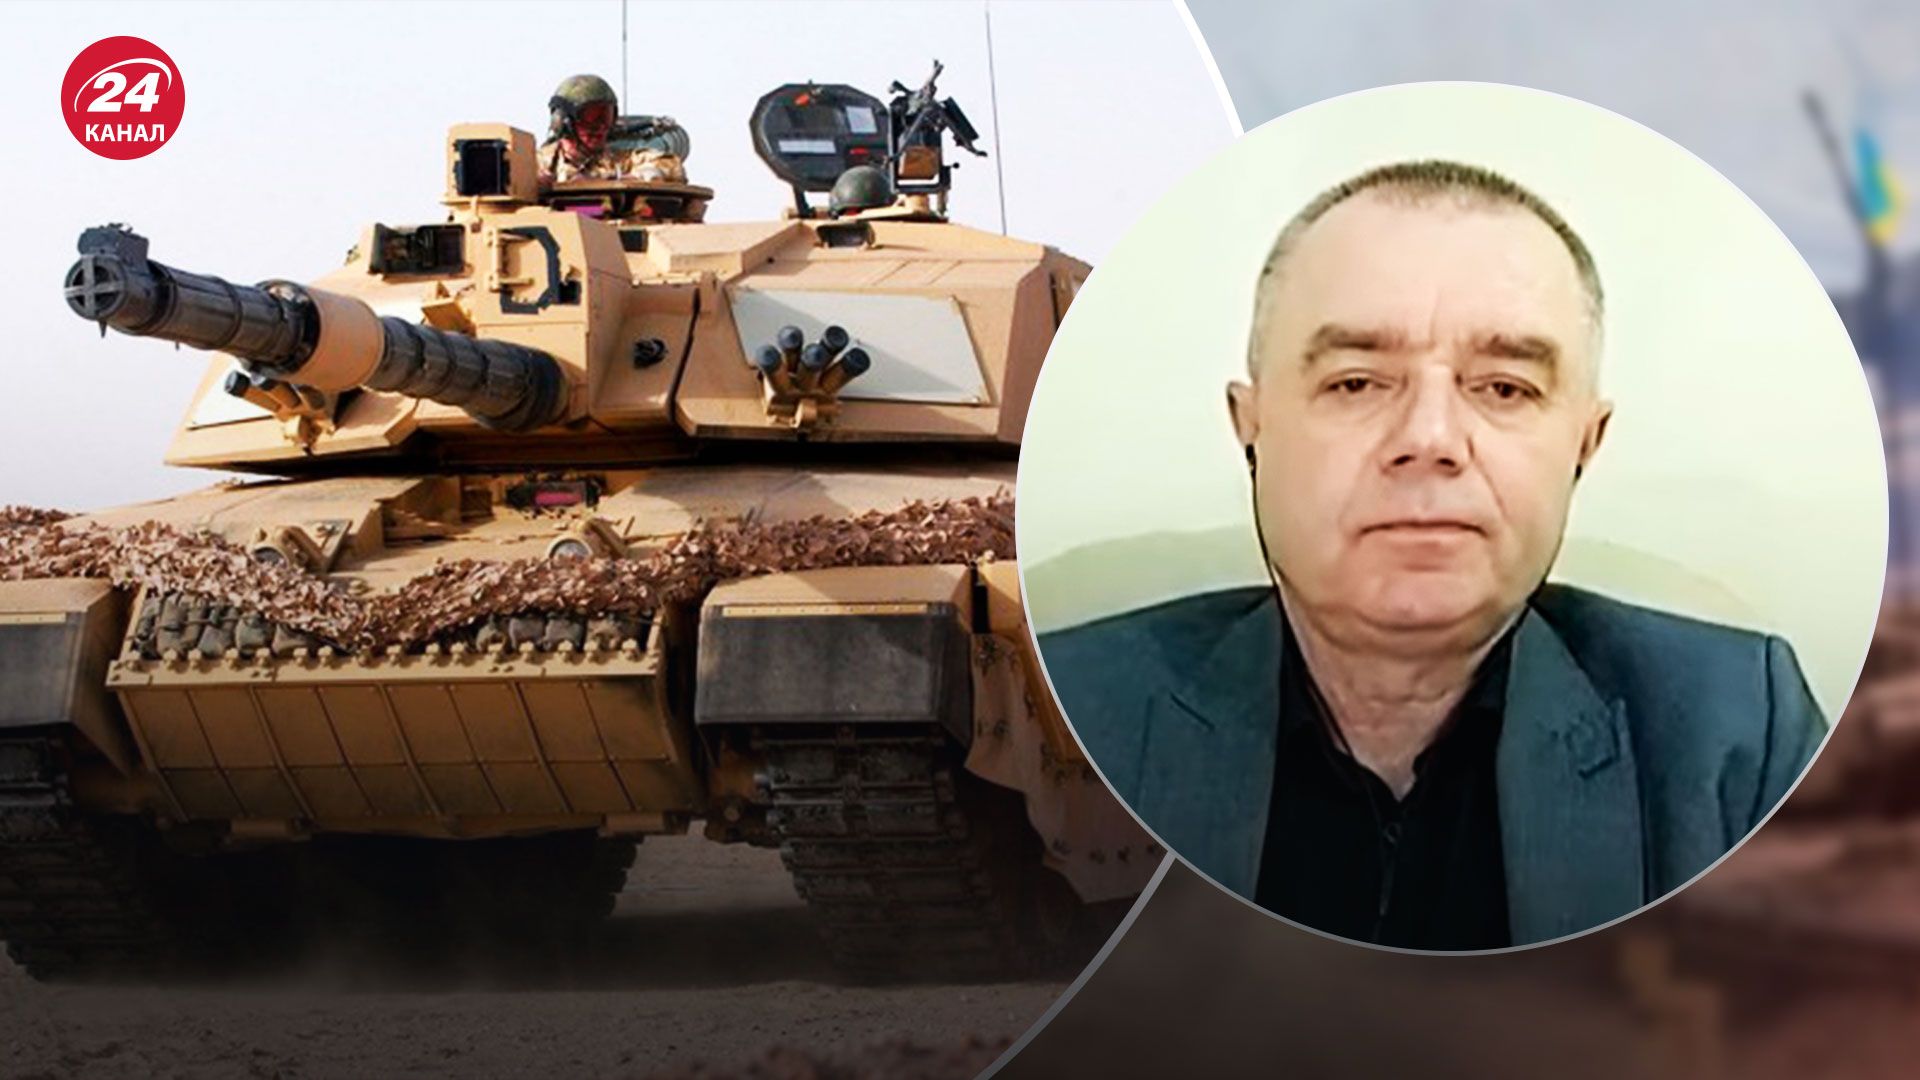 Challendger и Leopard уже в Украине - полковник ВСУ сказал, где лучше их применить - 24 Канал